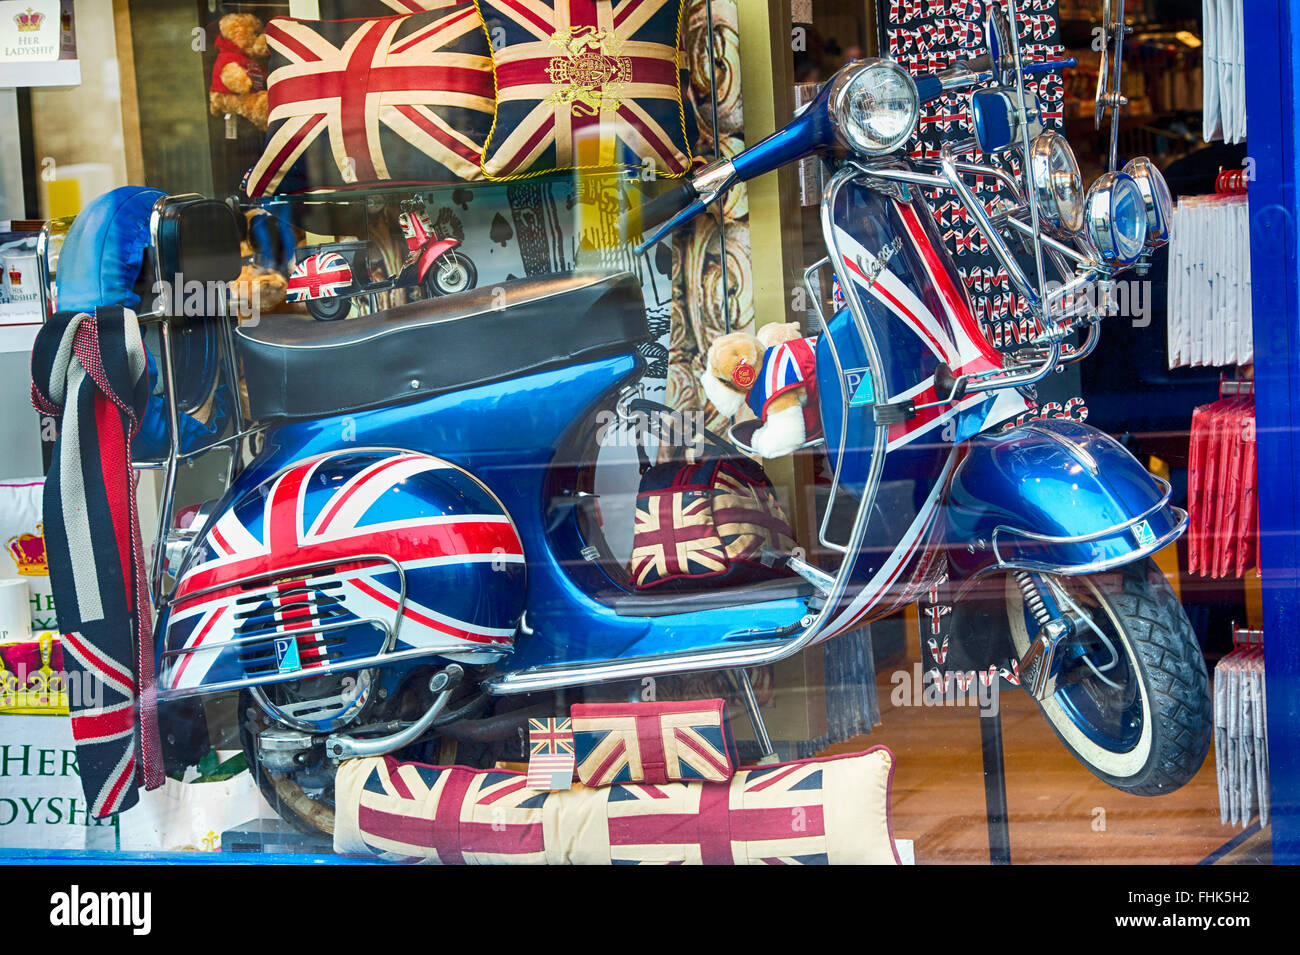 Mods vespa scooter et union jack produits dans une vitrine de l'affichage. Oxford, Angleterre Banque D'Images